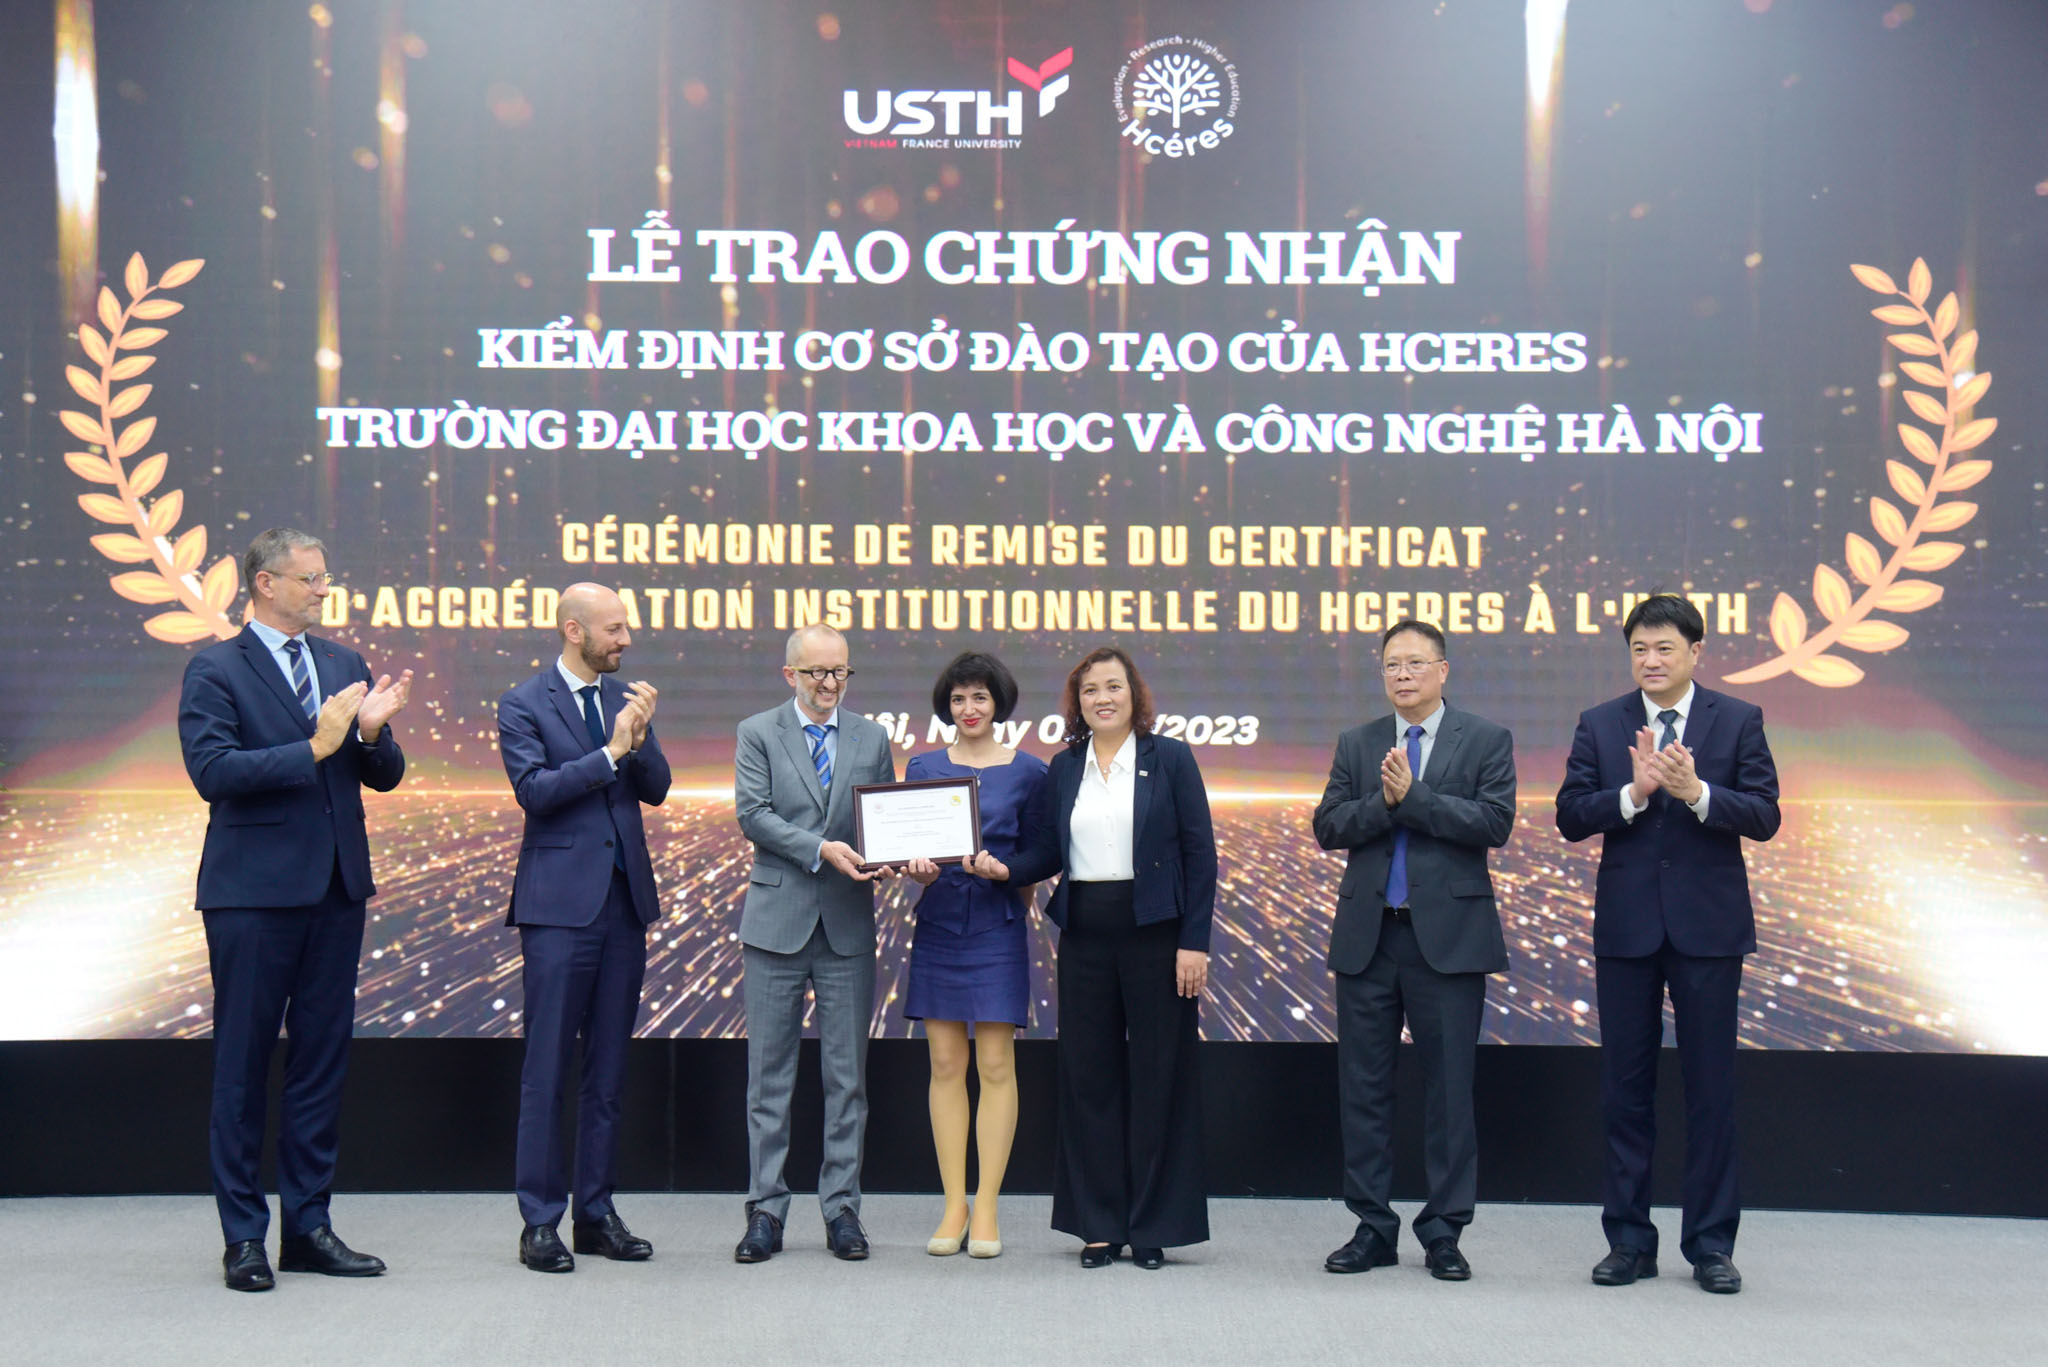 USTH là trường đại học thứ 6 của Việt Nam đạt chuẩn kiểm định cơ sở đào tạo của HCERES